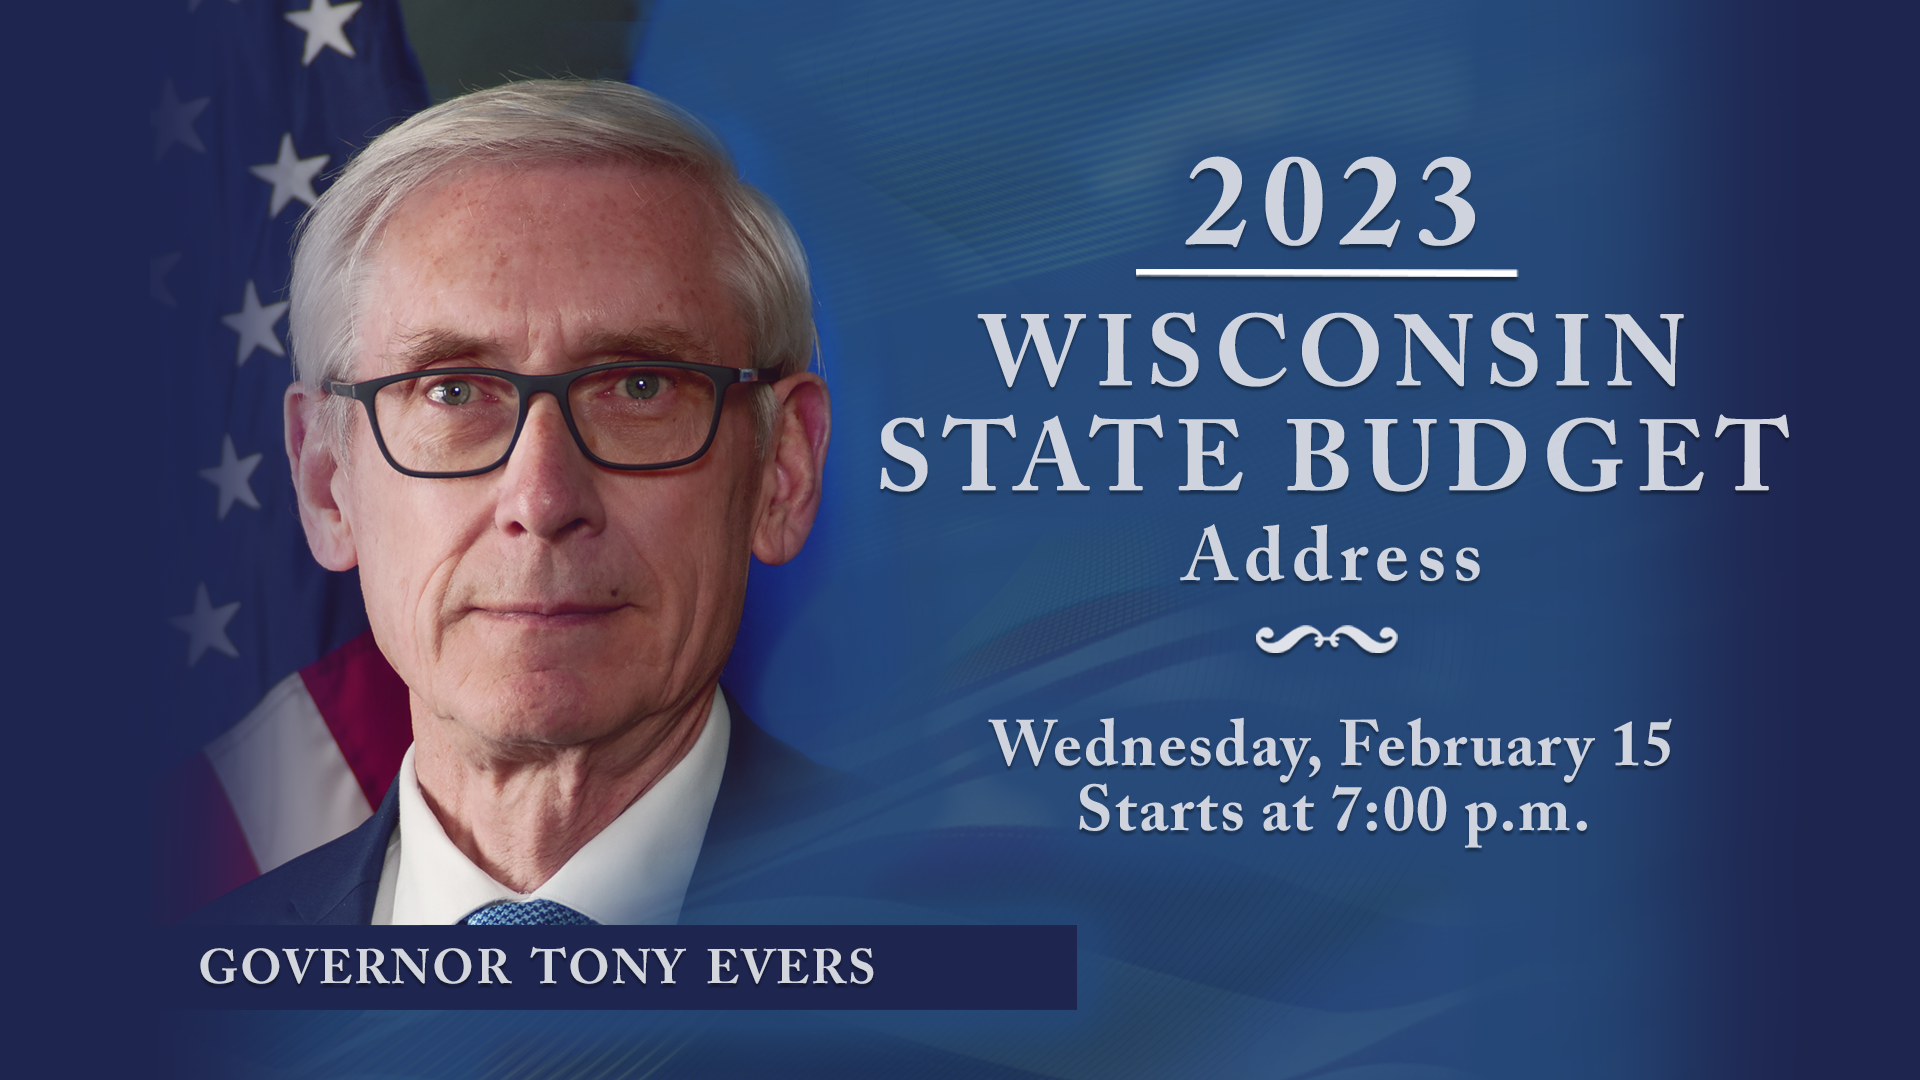 State Budget Address 2023 Wisconsin Vote